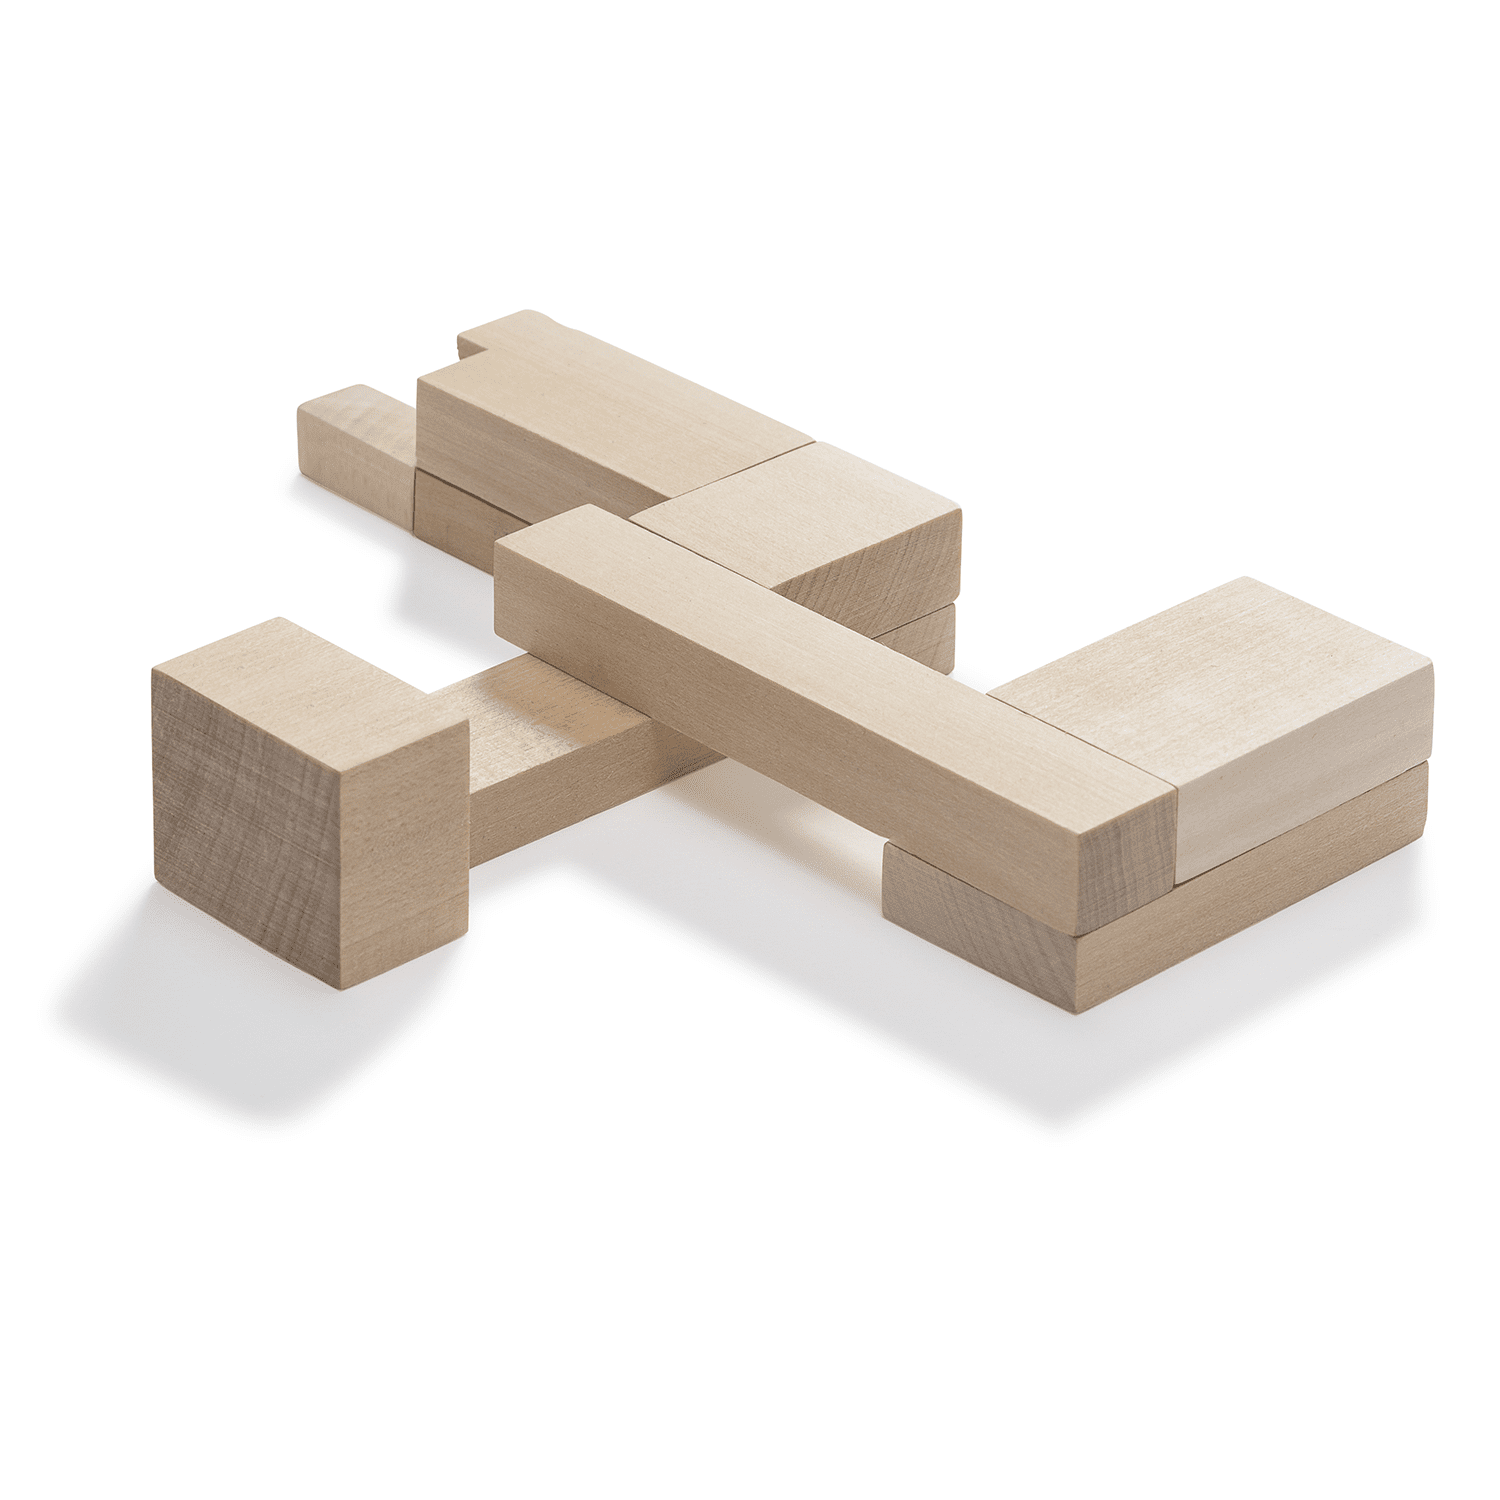 صورة Bauhaus Dessau Building Puzzle
